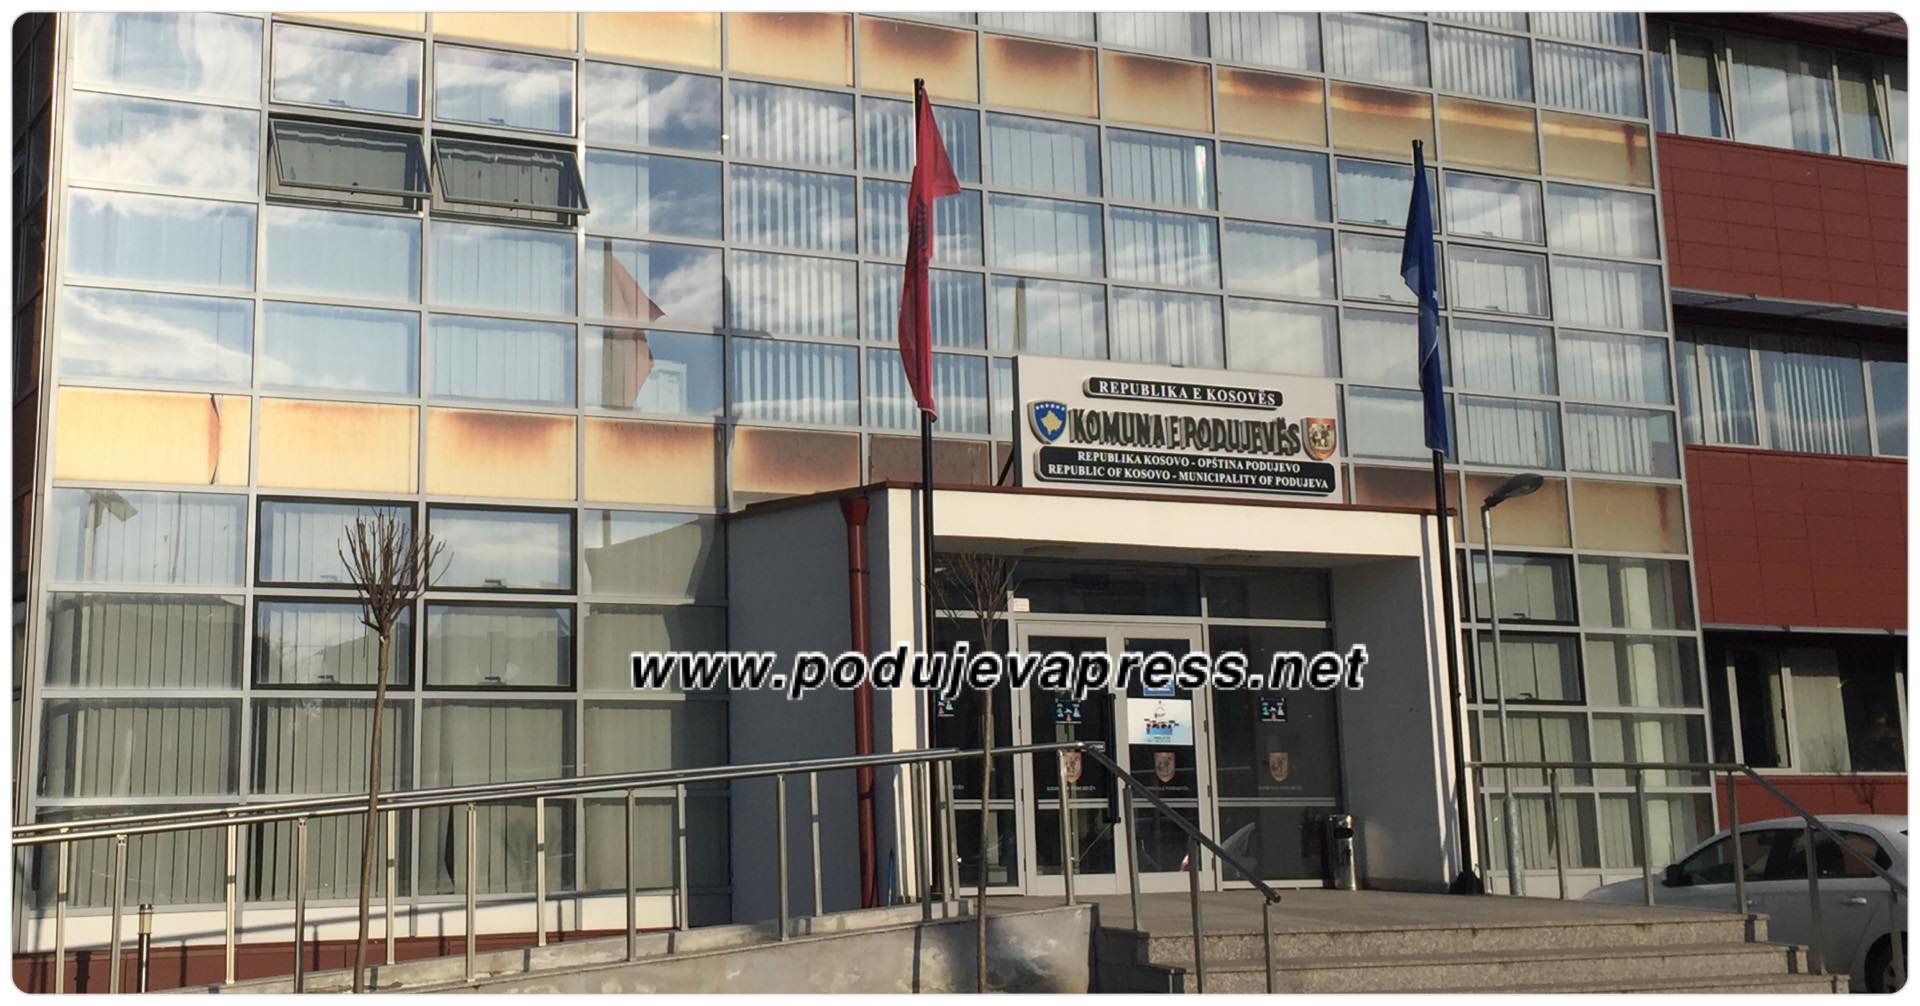  Njoftim me rëndësi nga Komuna e Podujevës